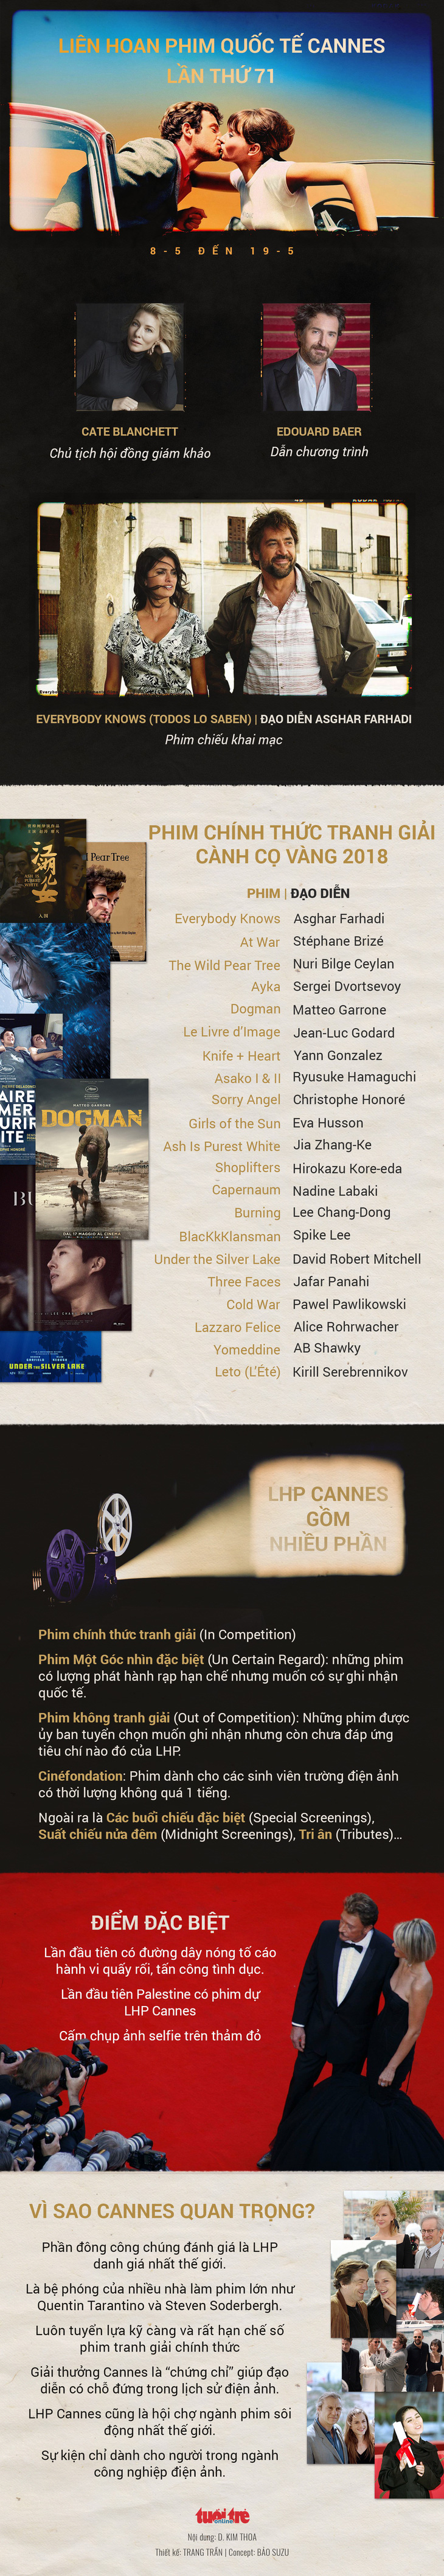 Đạo diễn Nga và Iran có phim ở Cannes nhưng bị cấm xuất cảnh - Ảnh 5.